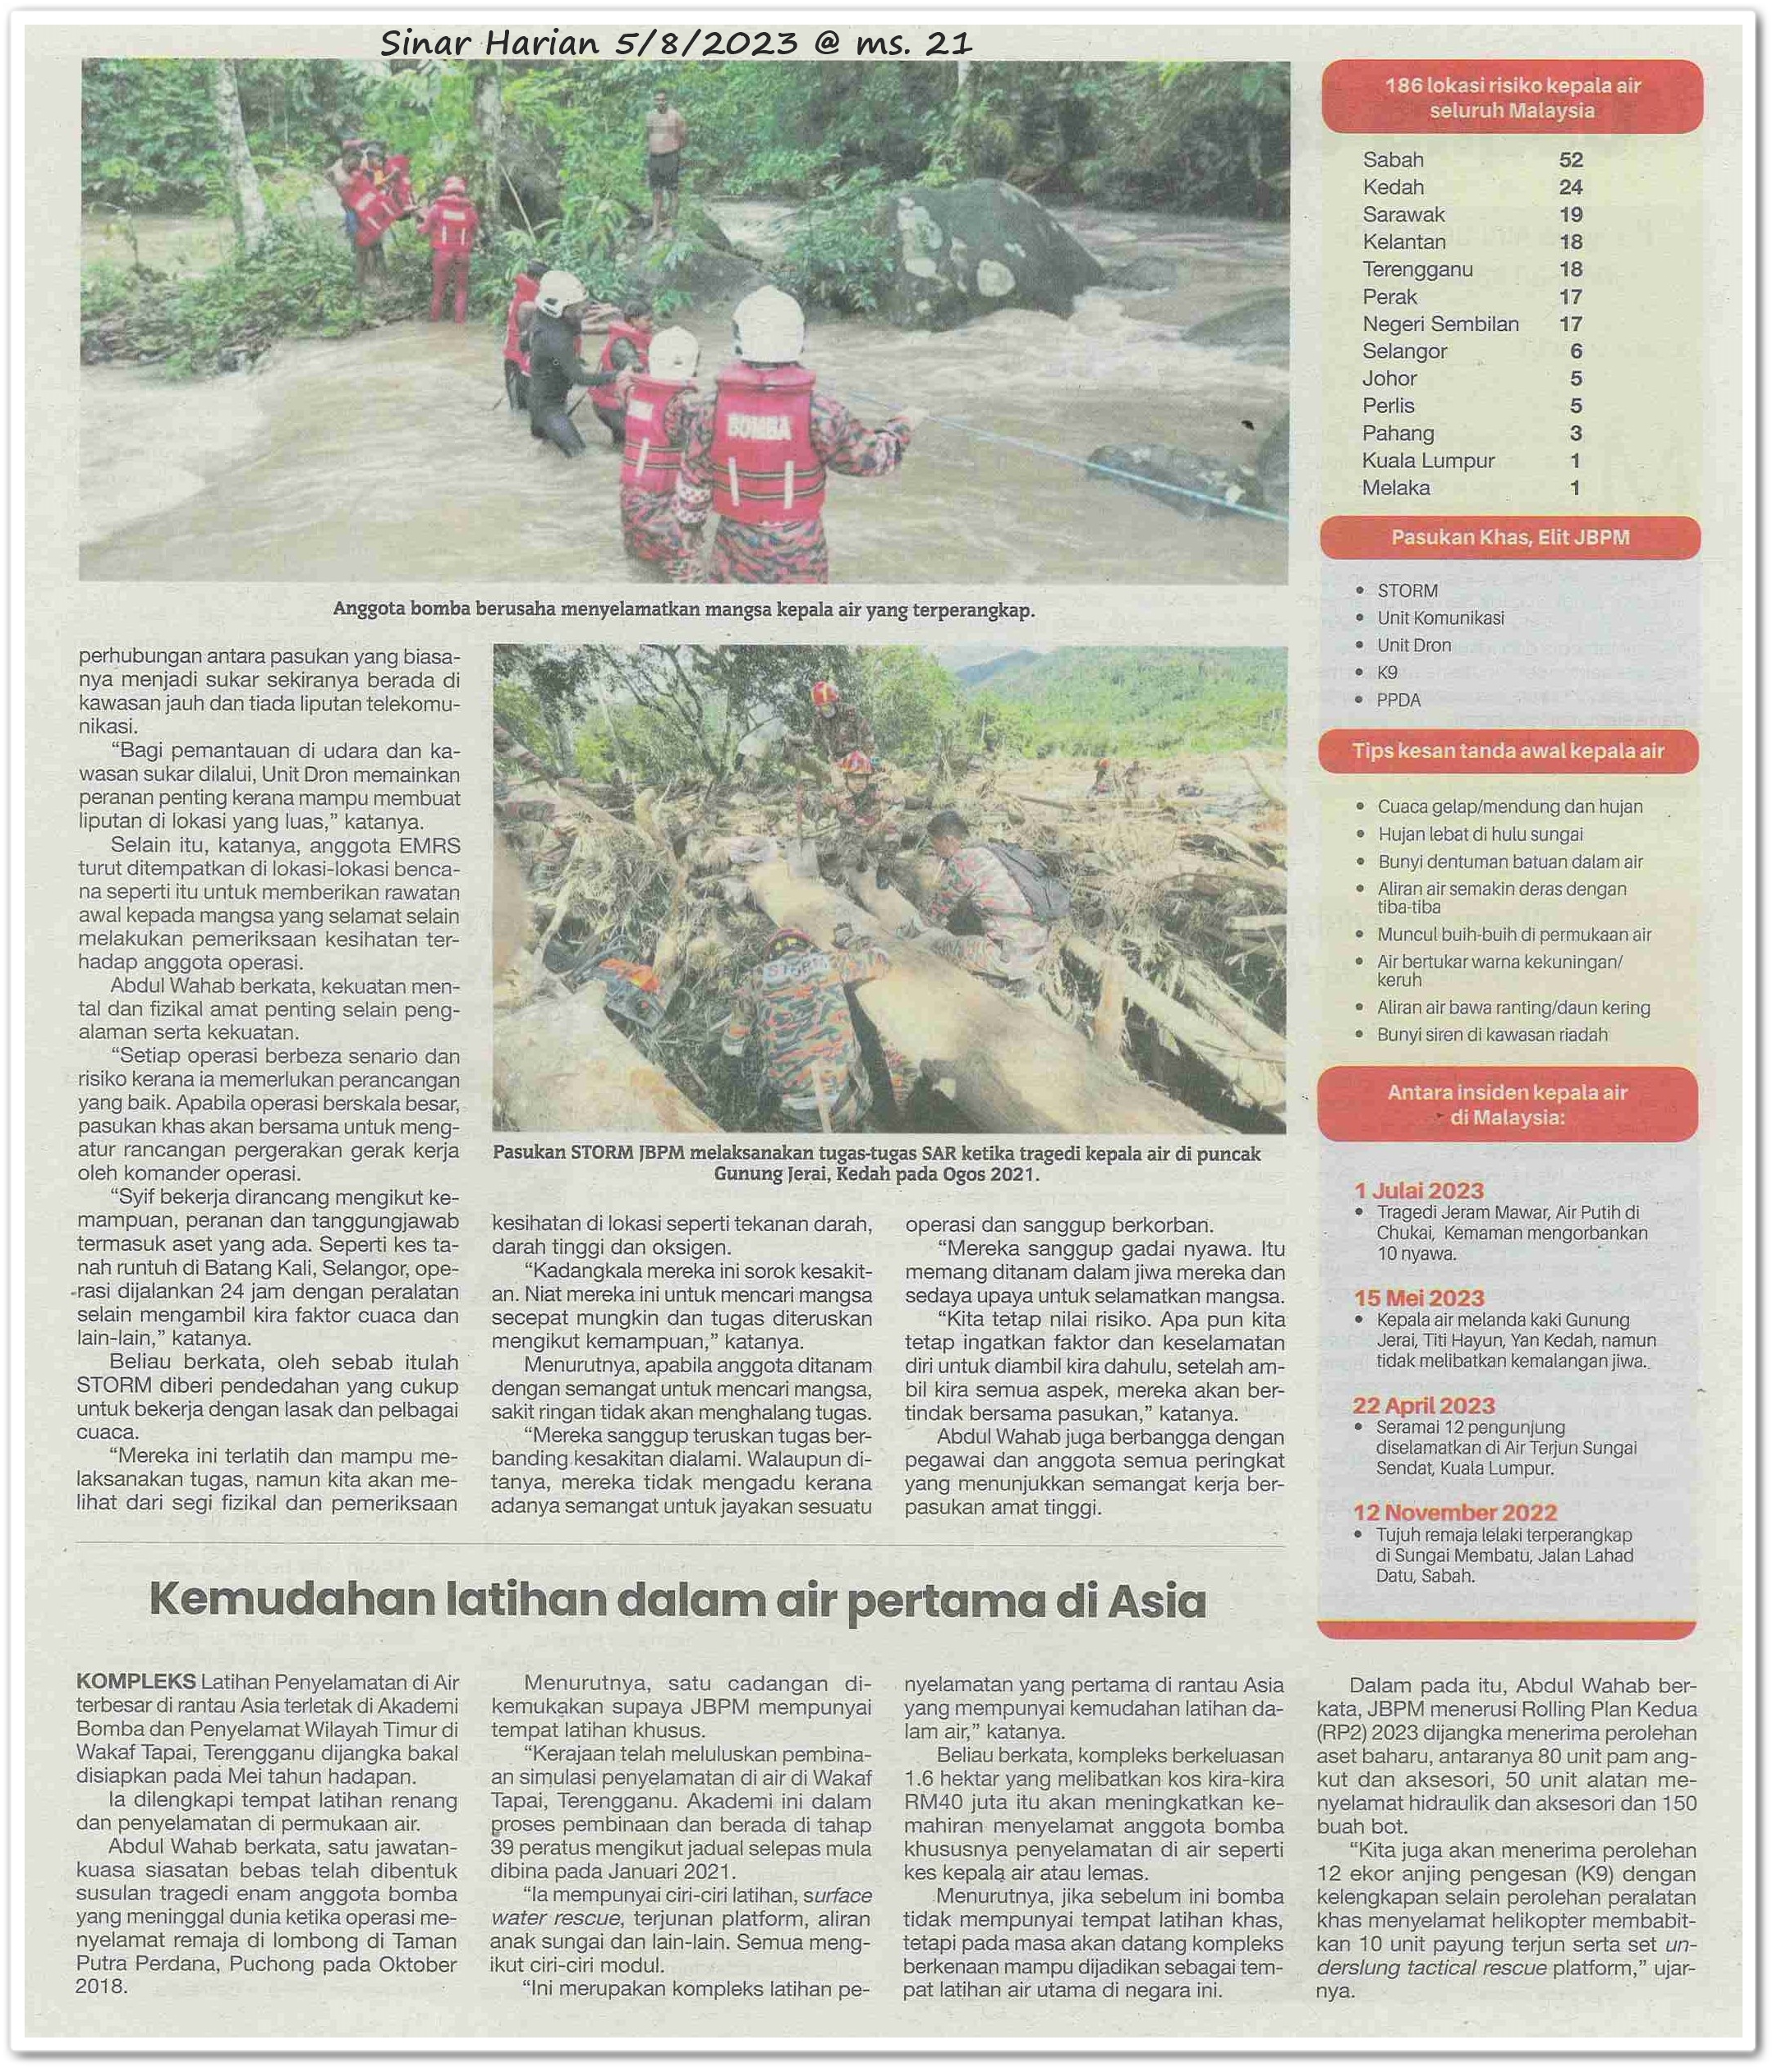 Kepala air ibarat bom jangka - Keratan akhbar Sinar Harian 5 Ogos 2023